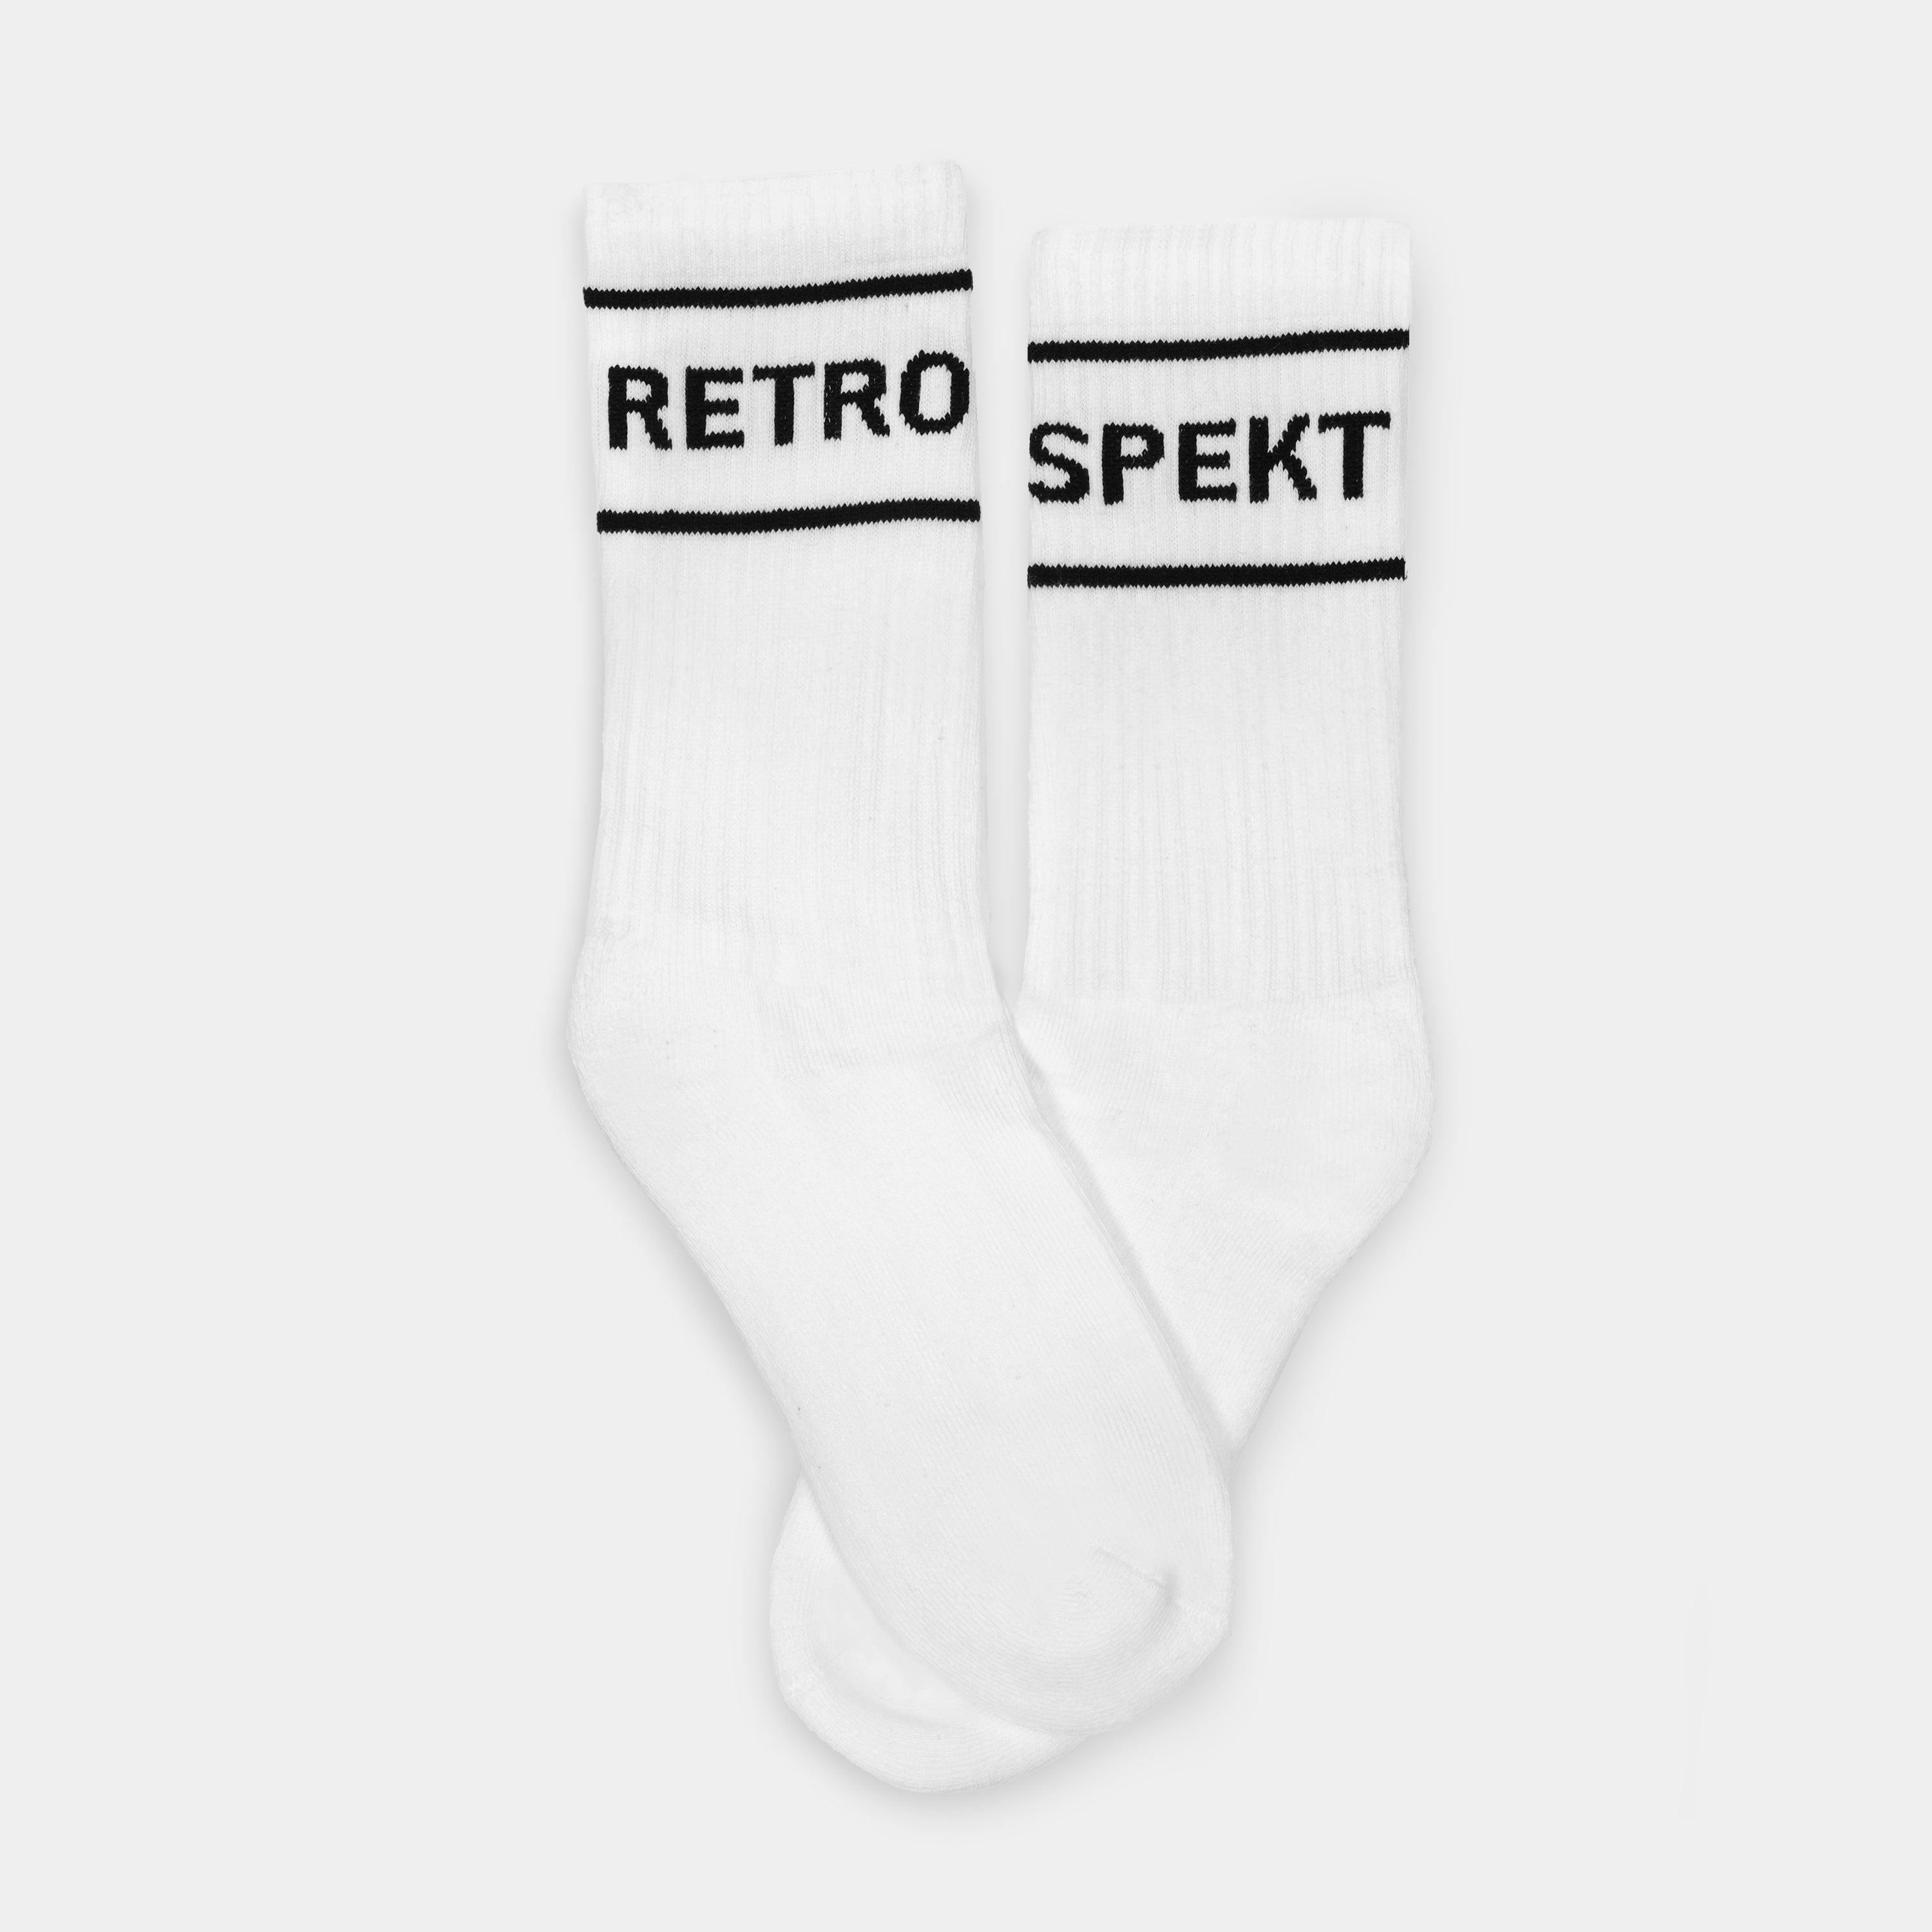 Retrospekt Retro Tube Socks - 2 Pack